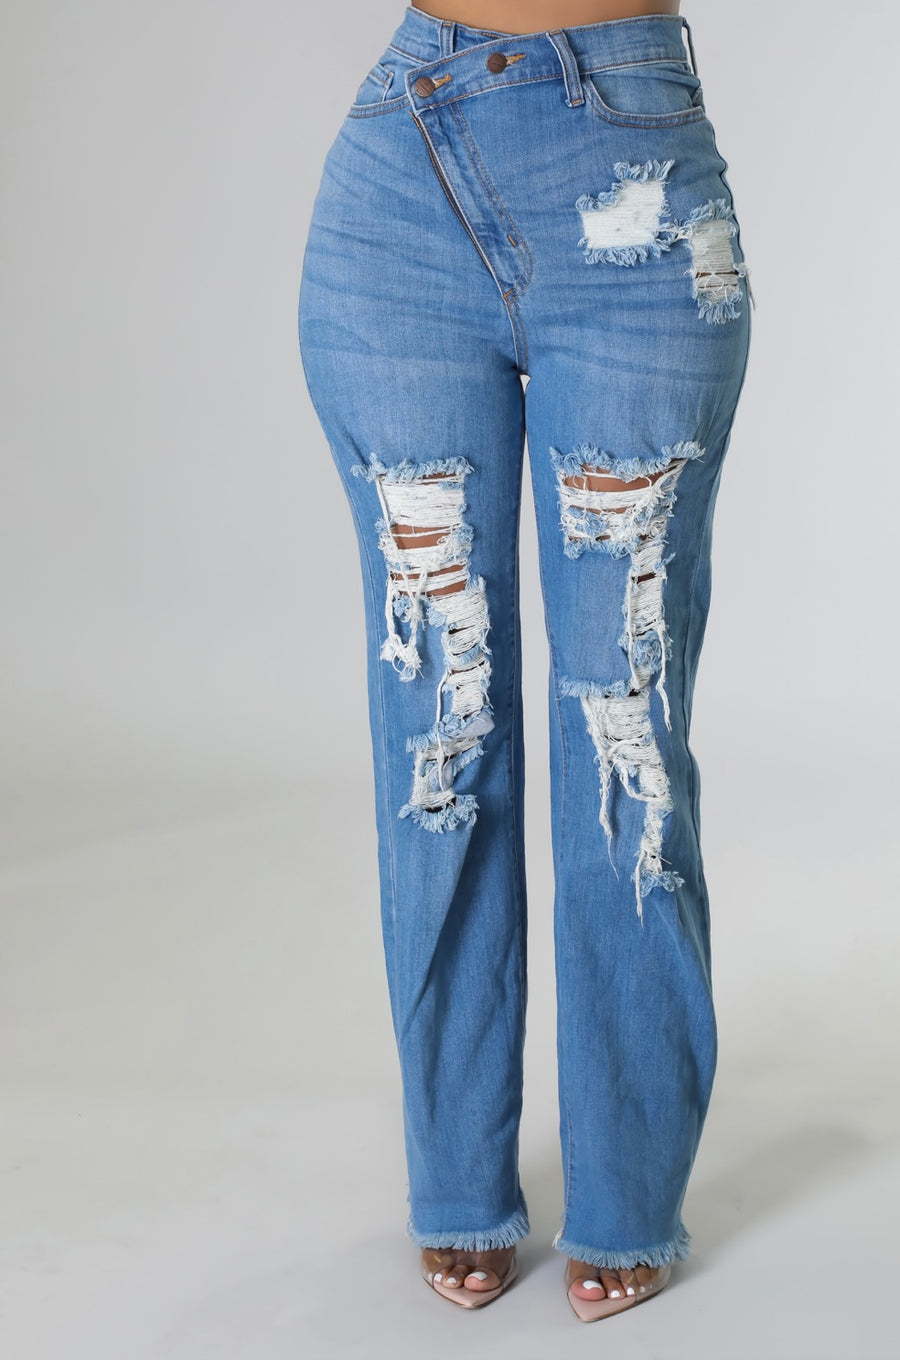 Miya babe women high waisted jeans